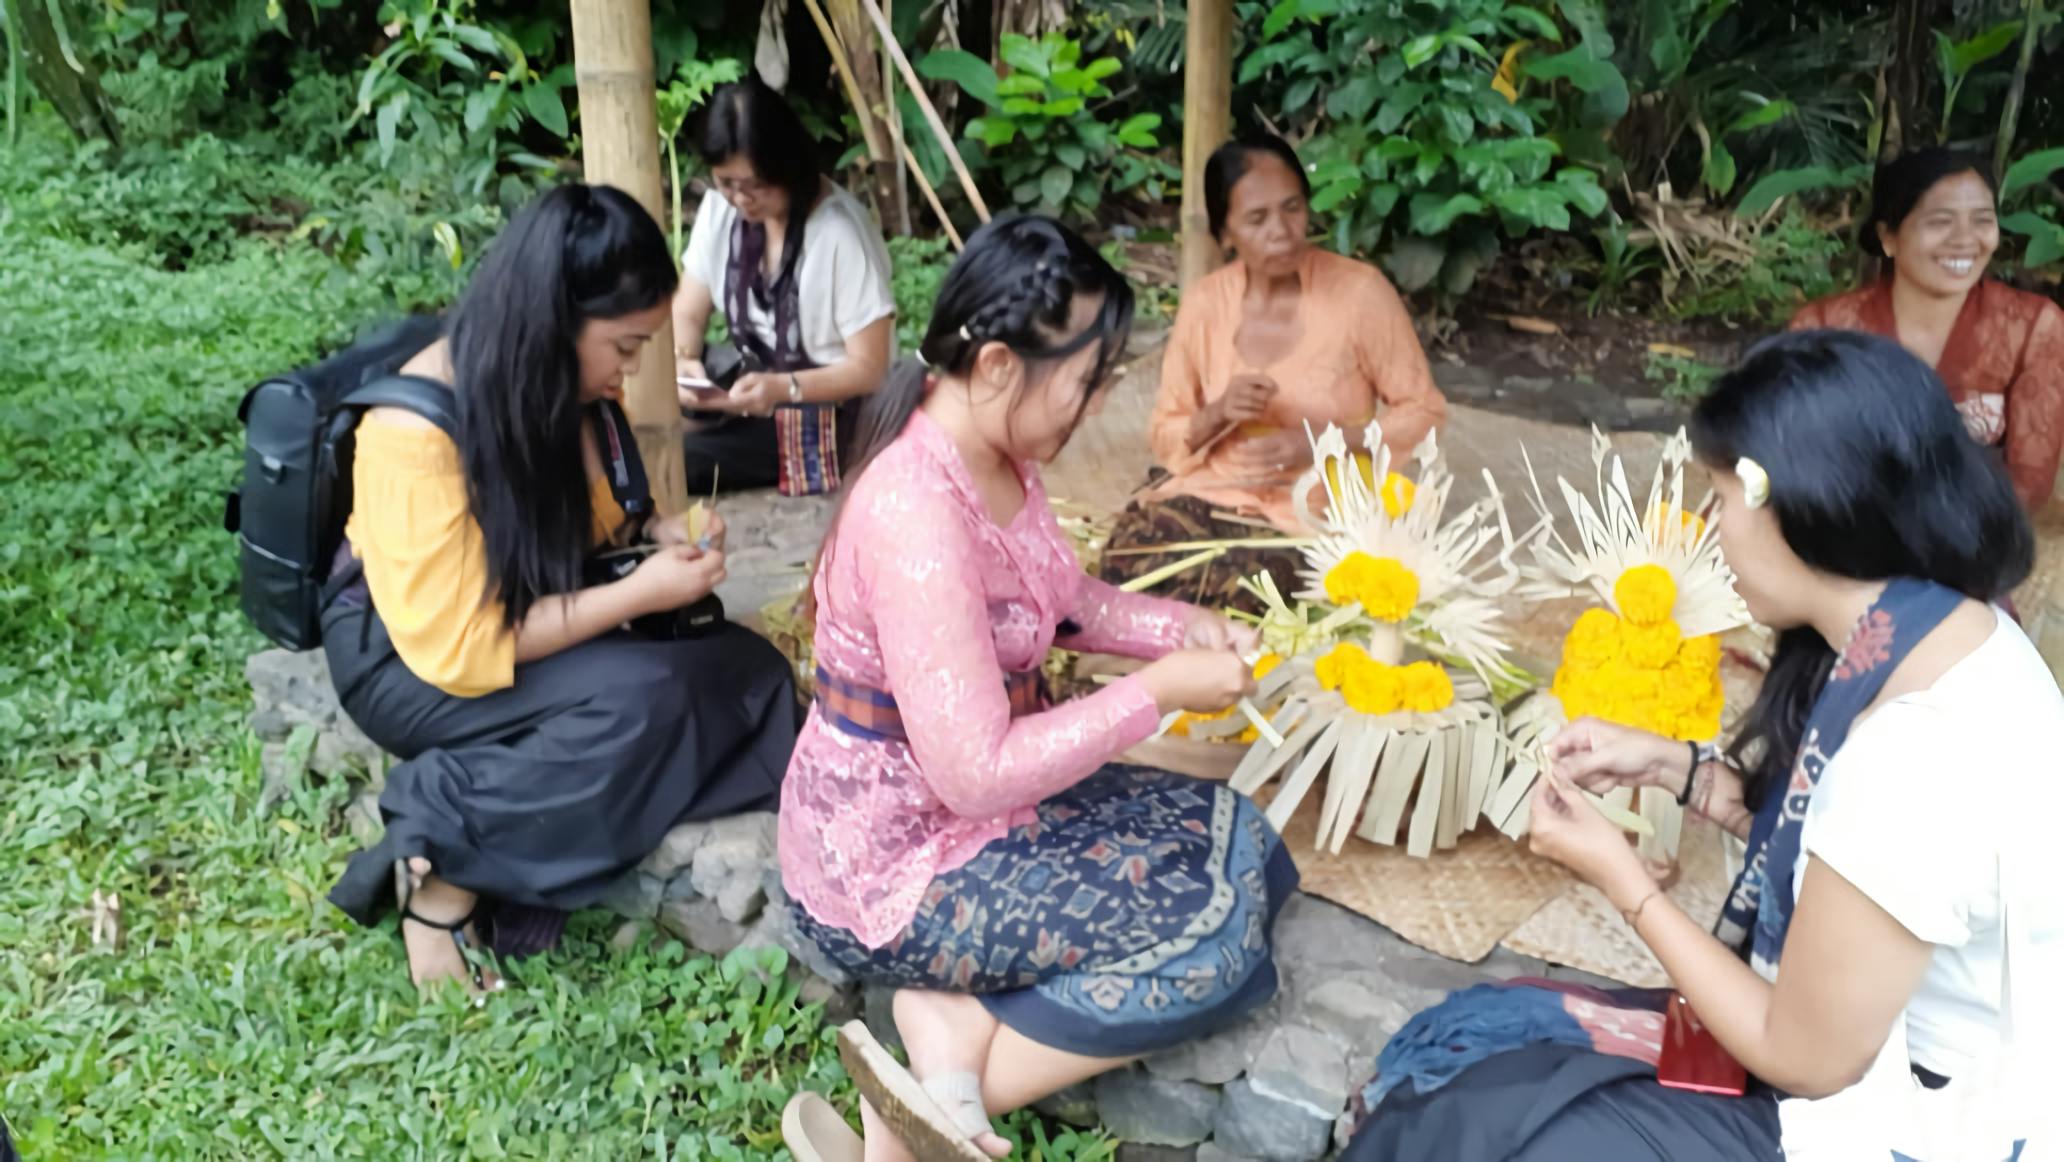 Atelier d'offrande de rituels hindous de Bali